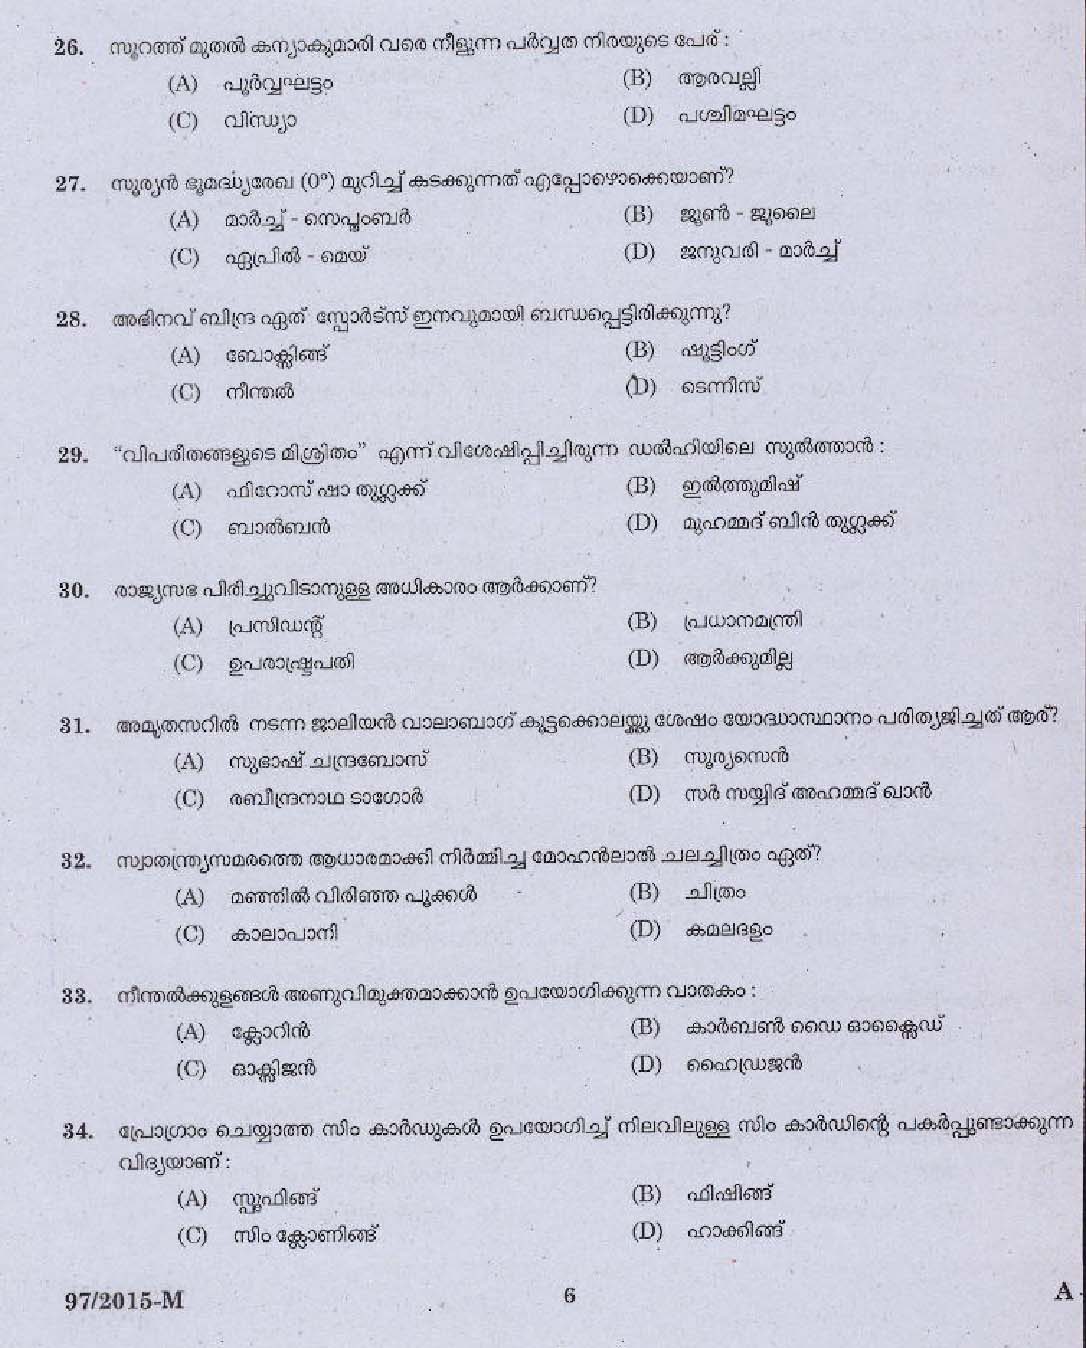 Kerala PSC Driver Grade II Exam 2015 Question Paper Code 972015 M 4